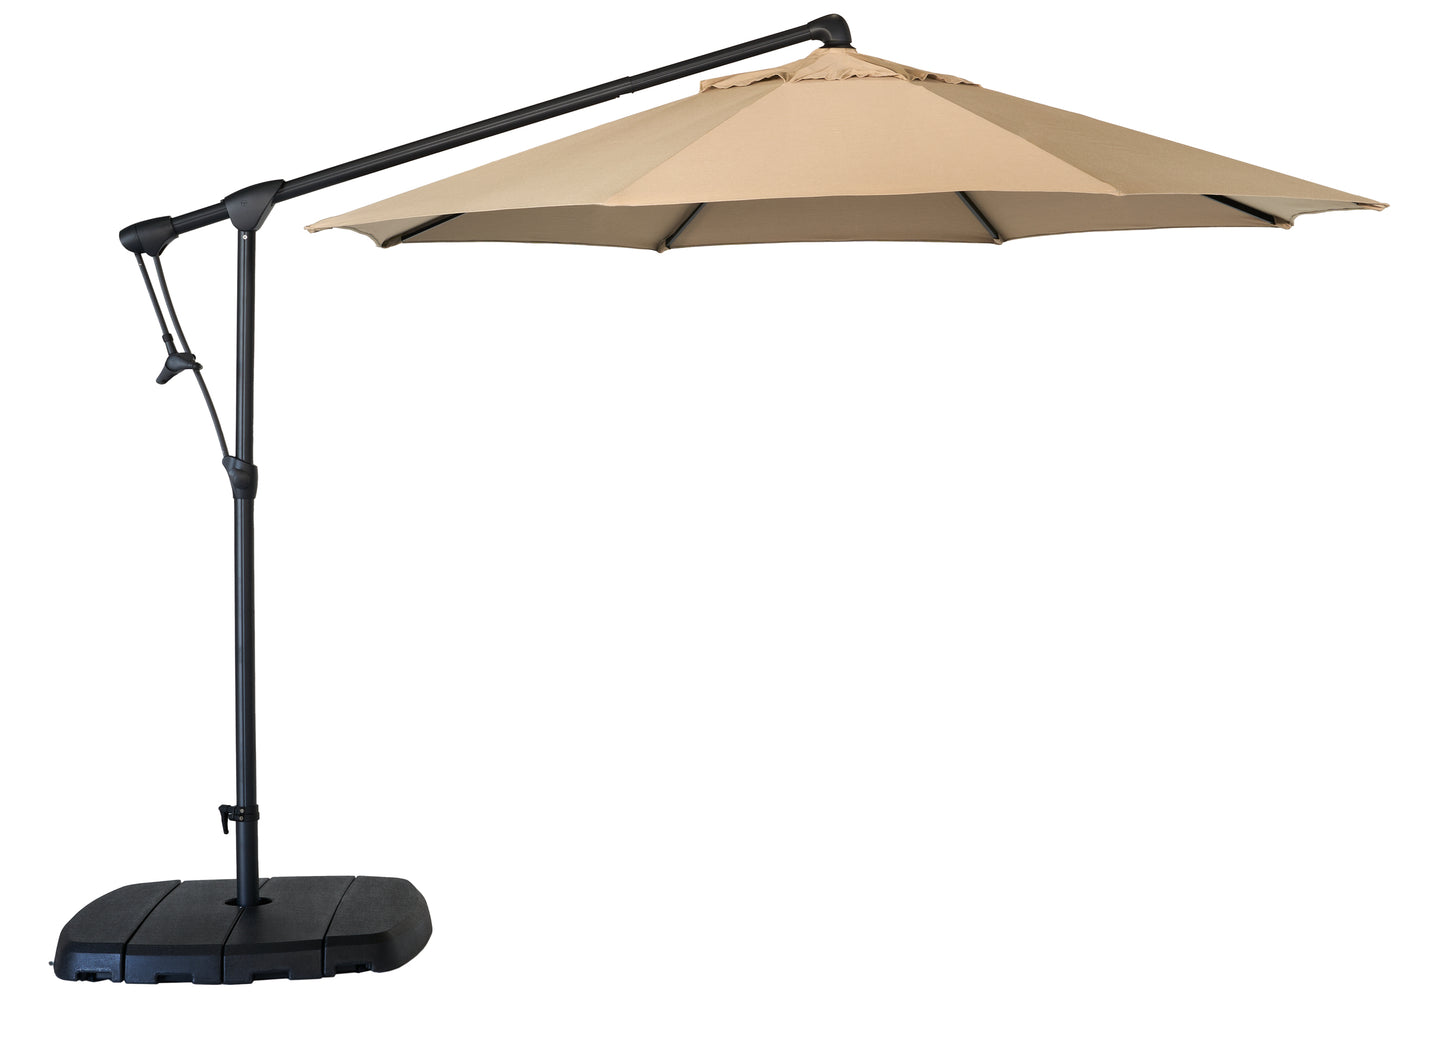 10' Treasure Garden Cantilever Umbrella with Black Frame